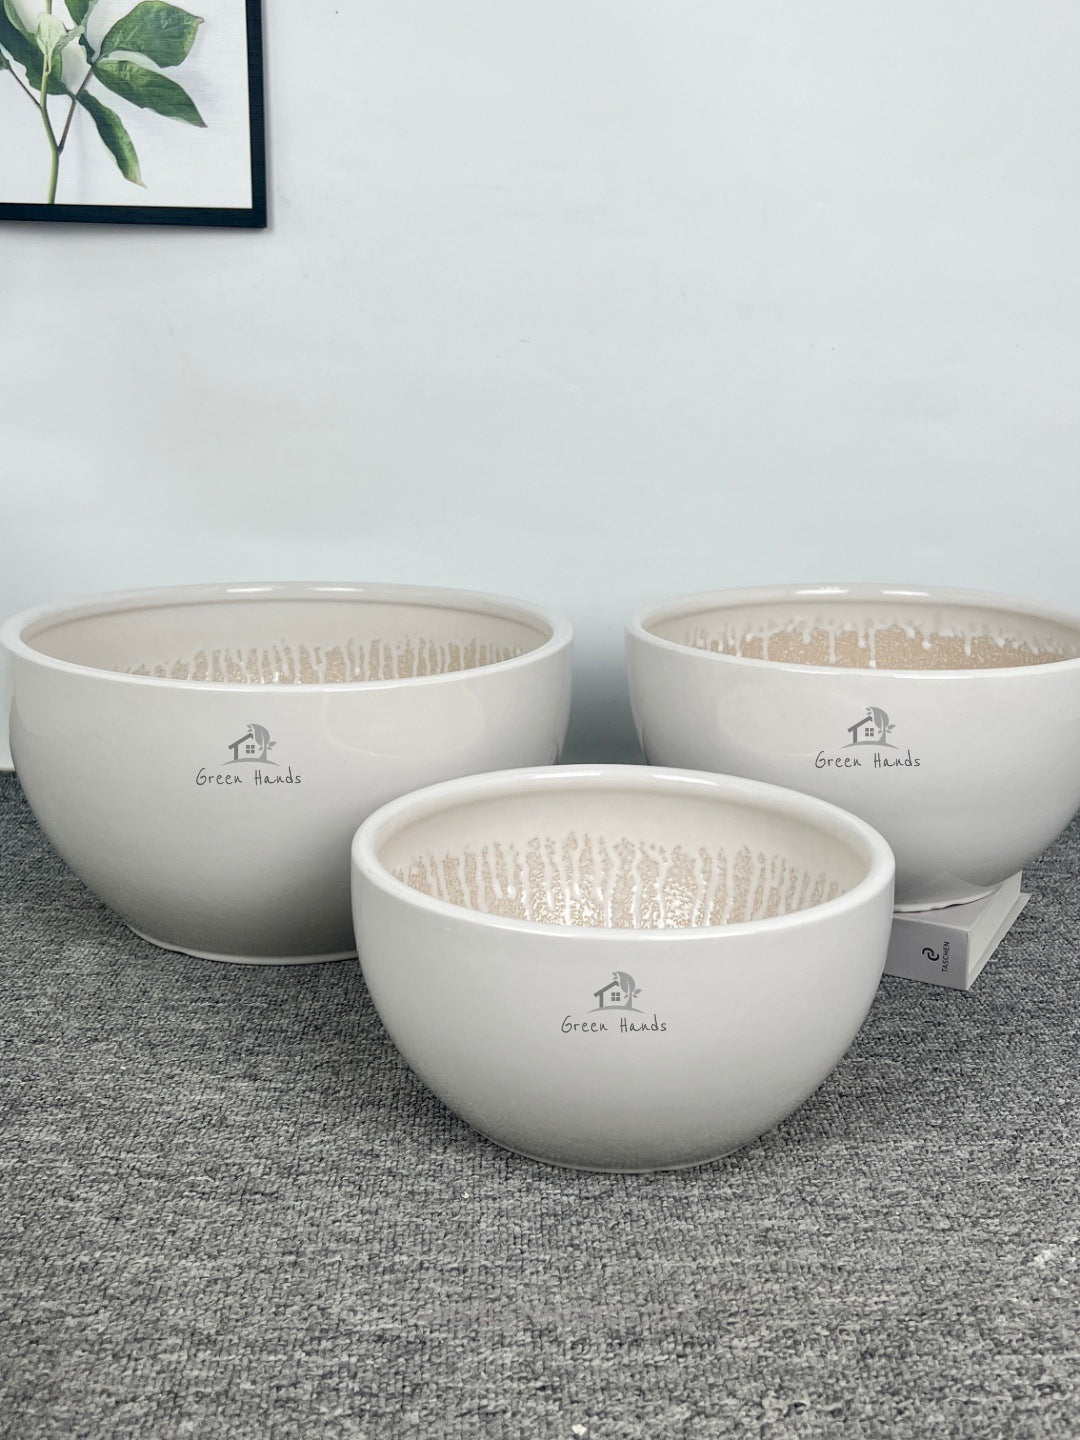 Contemporary Bonsai Pots in UAE